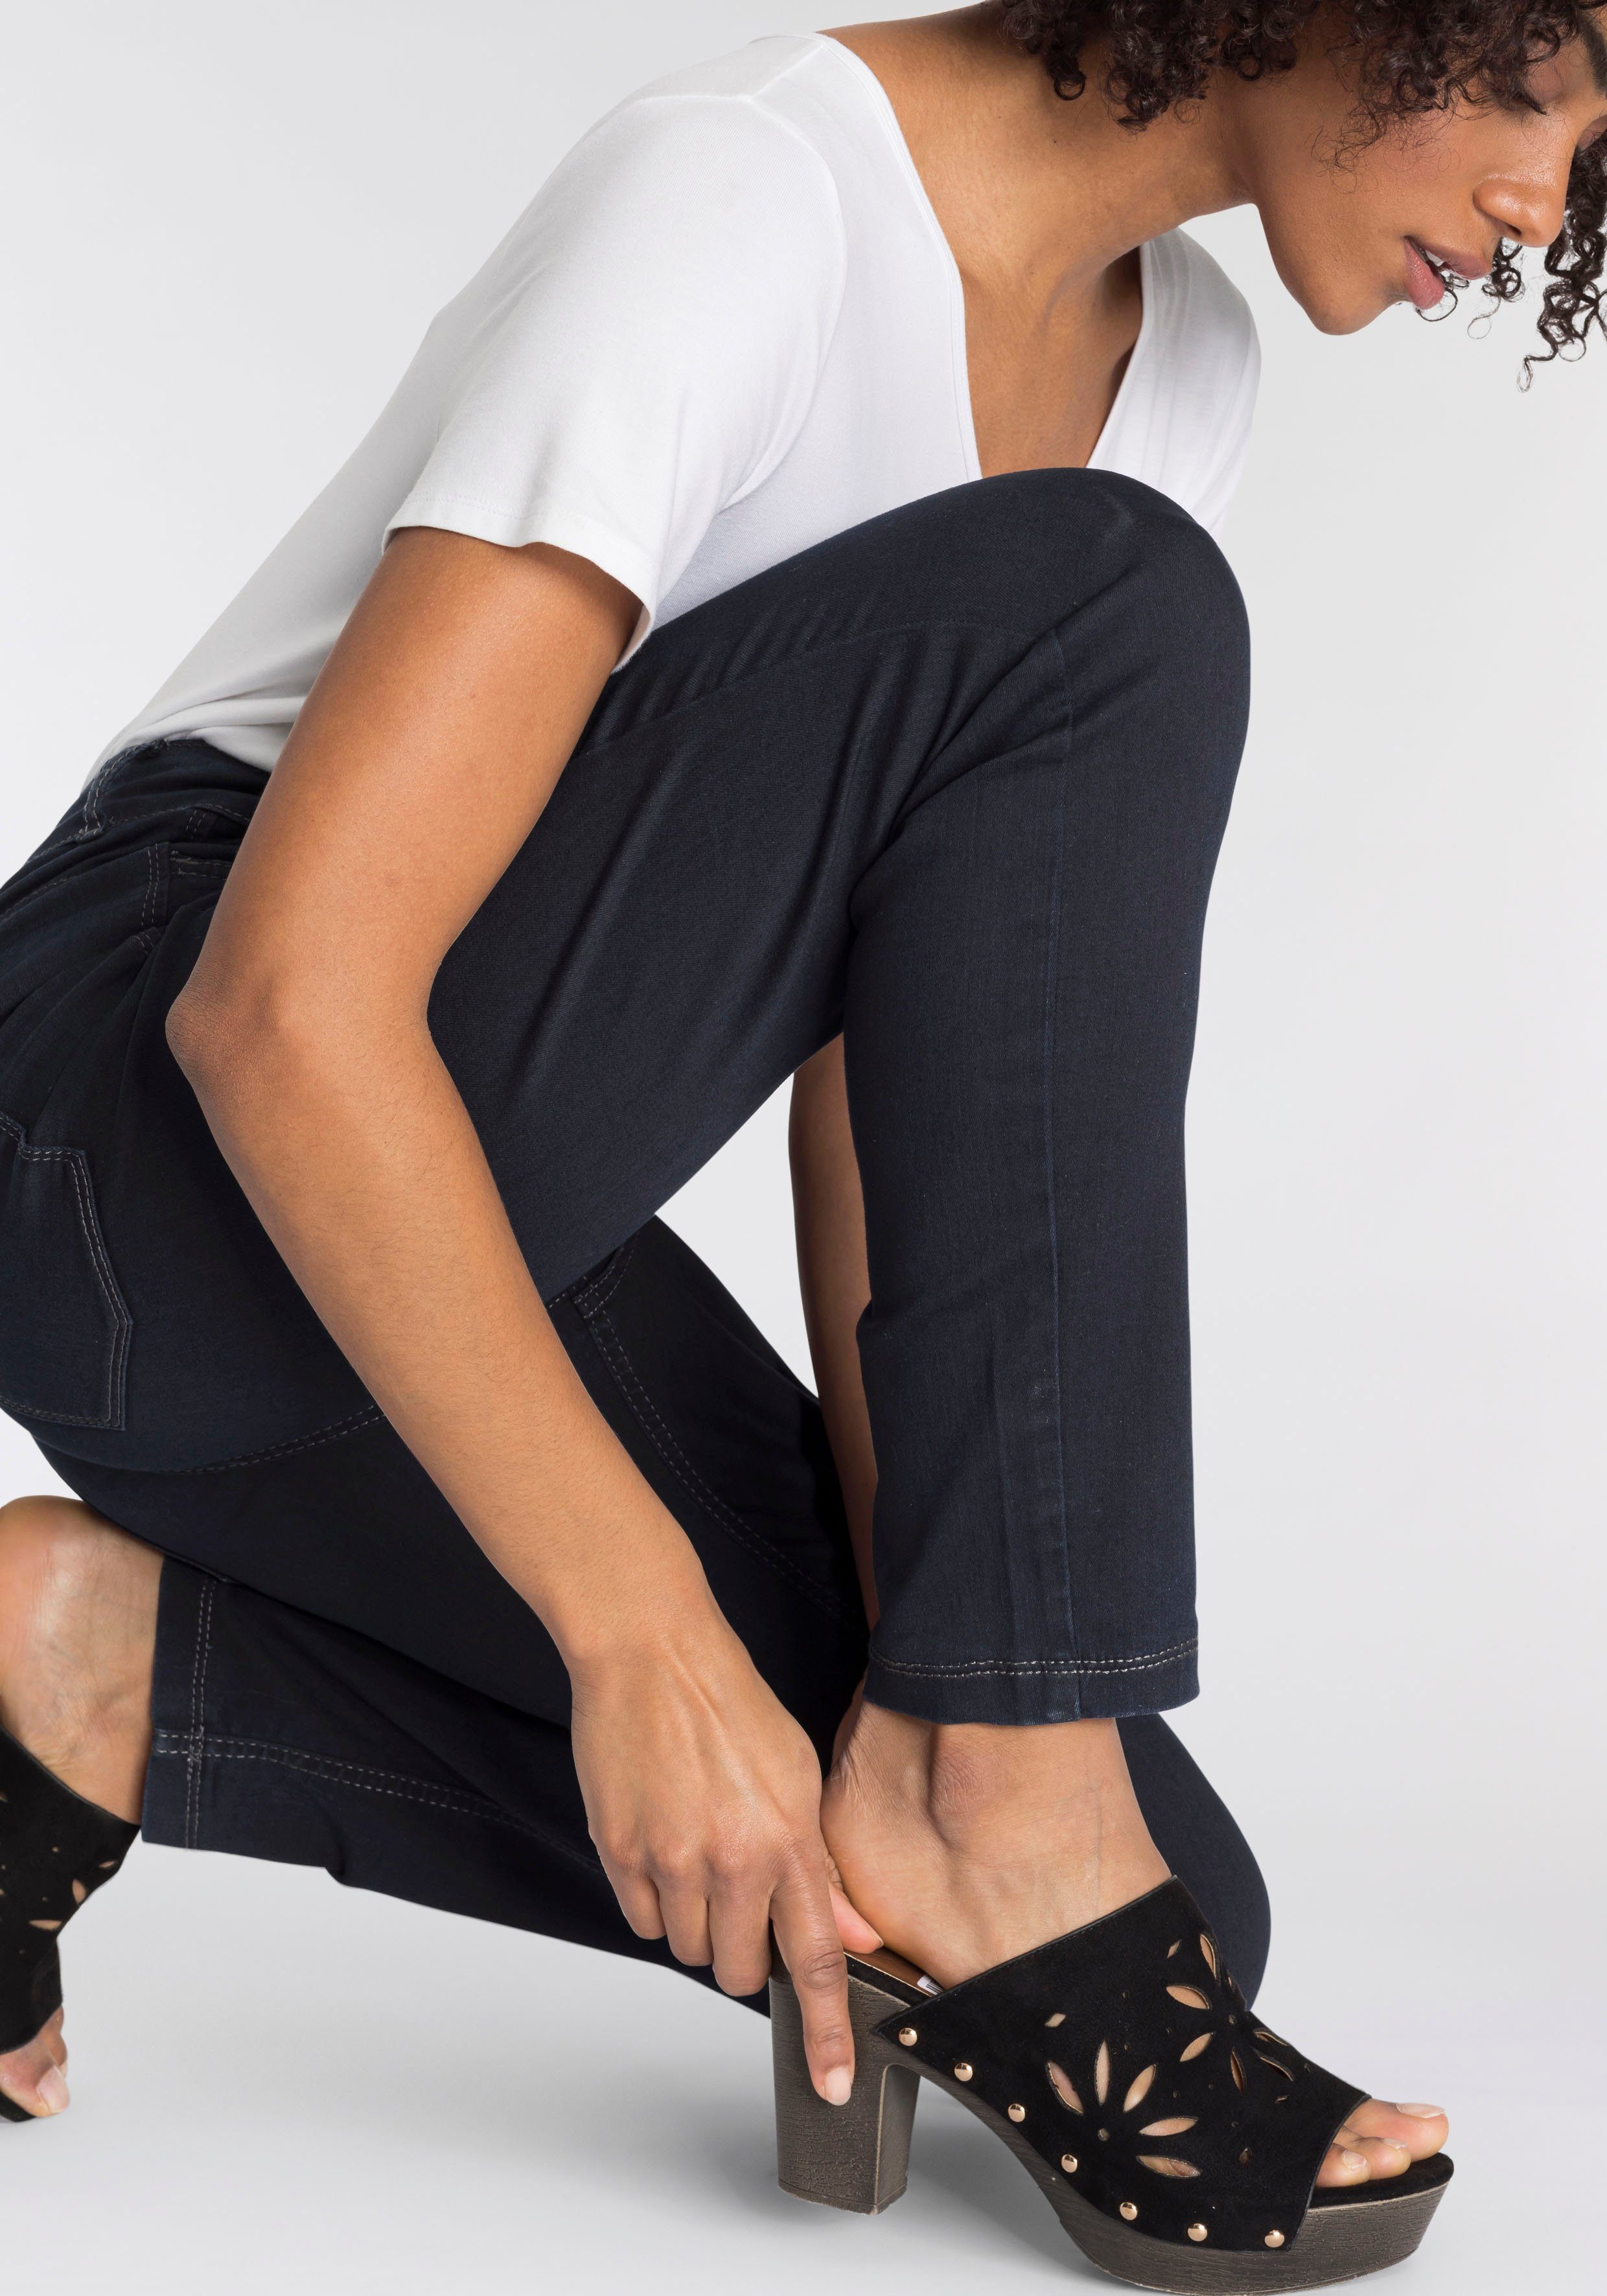 MAC Skinny-fit-Jeans bequem Power-Stretch Qualität Hiperstretch-Skinny blue dark Tag sitzt den ganzen rinsed